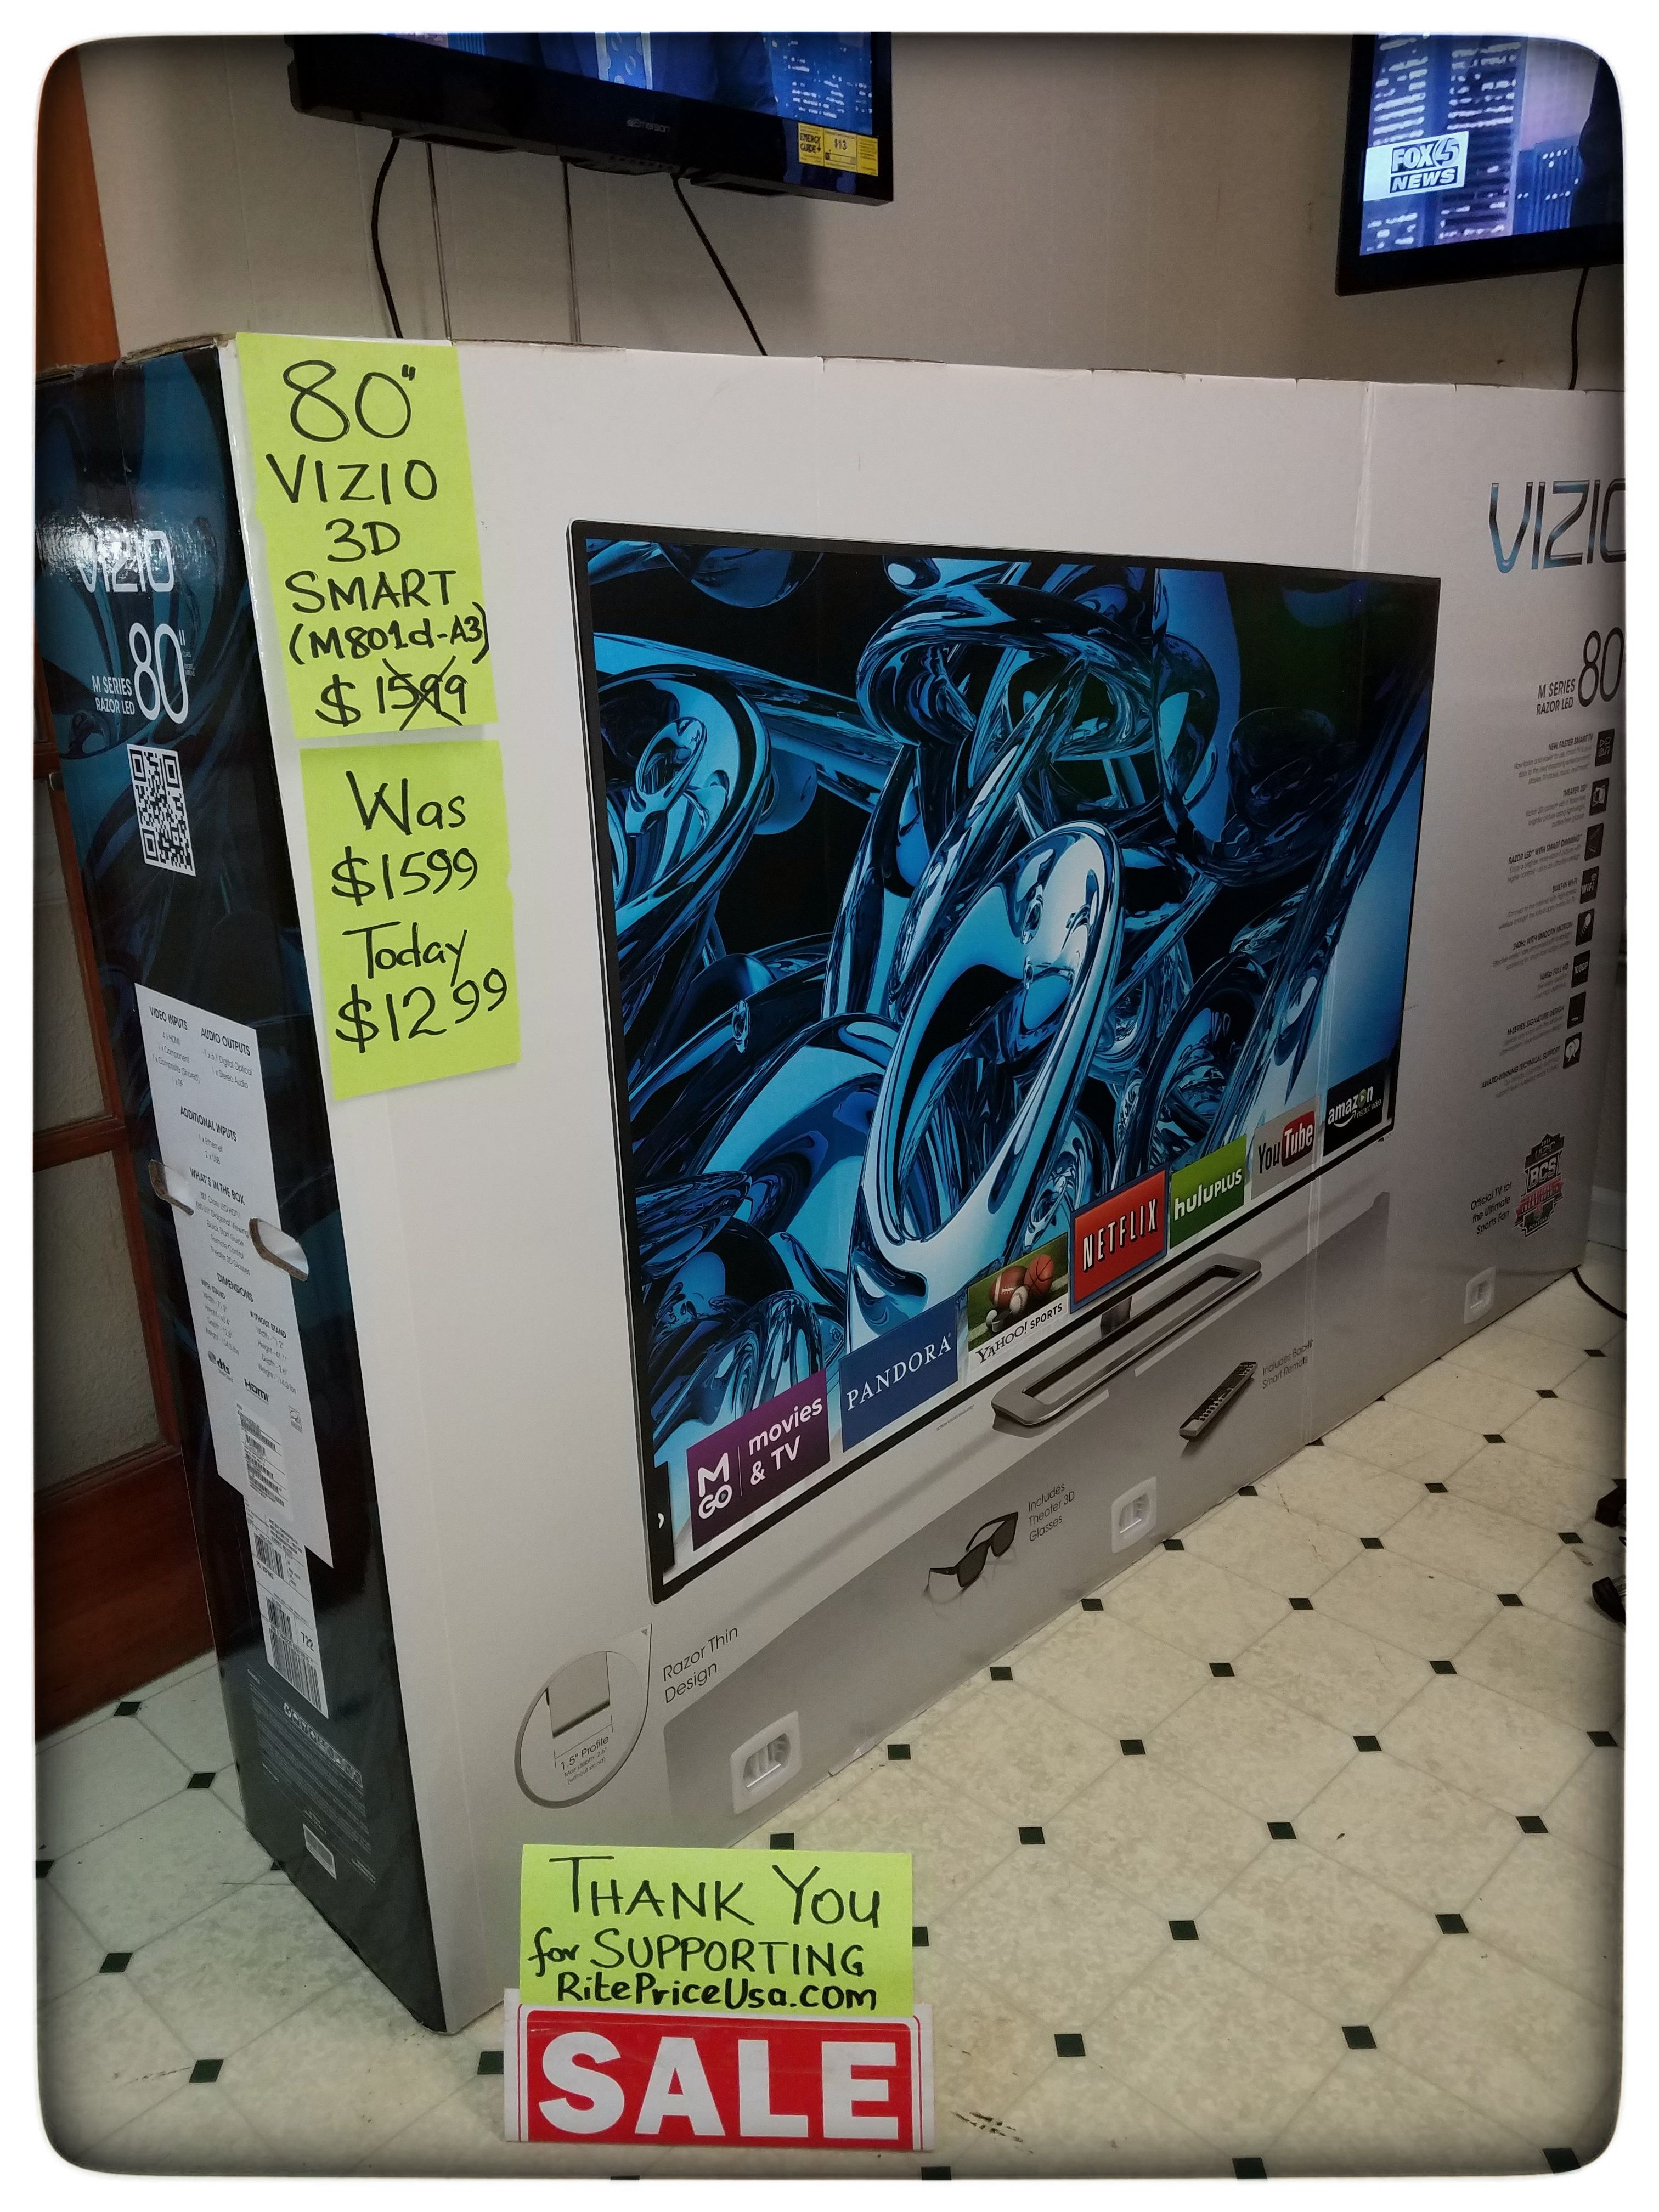 80" NEW VIZIO 3D SMART LED TV. PLS READ DESCRIPTION